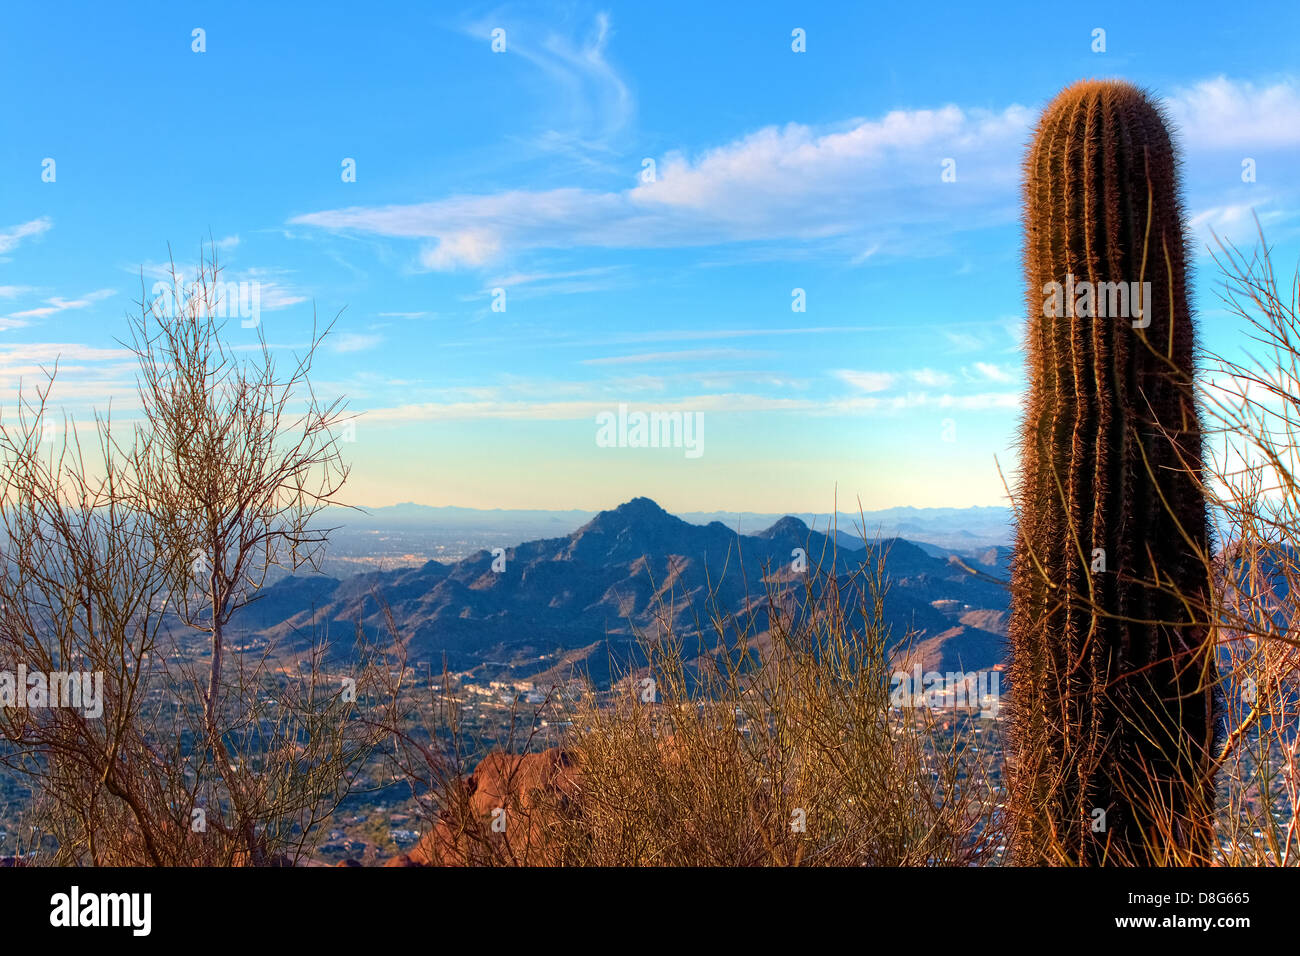 Einzelnen Kaktus am Gipfel des Camelsback mit Blick auf Hügel von Phoenix in Arizona Stockfoto